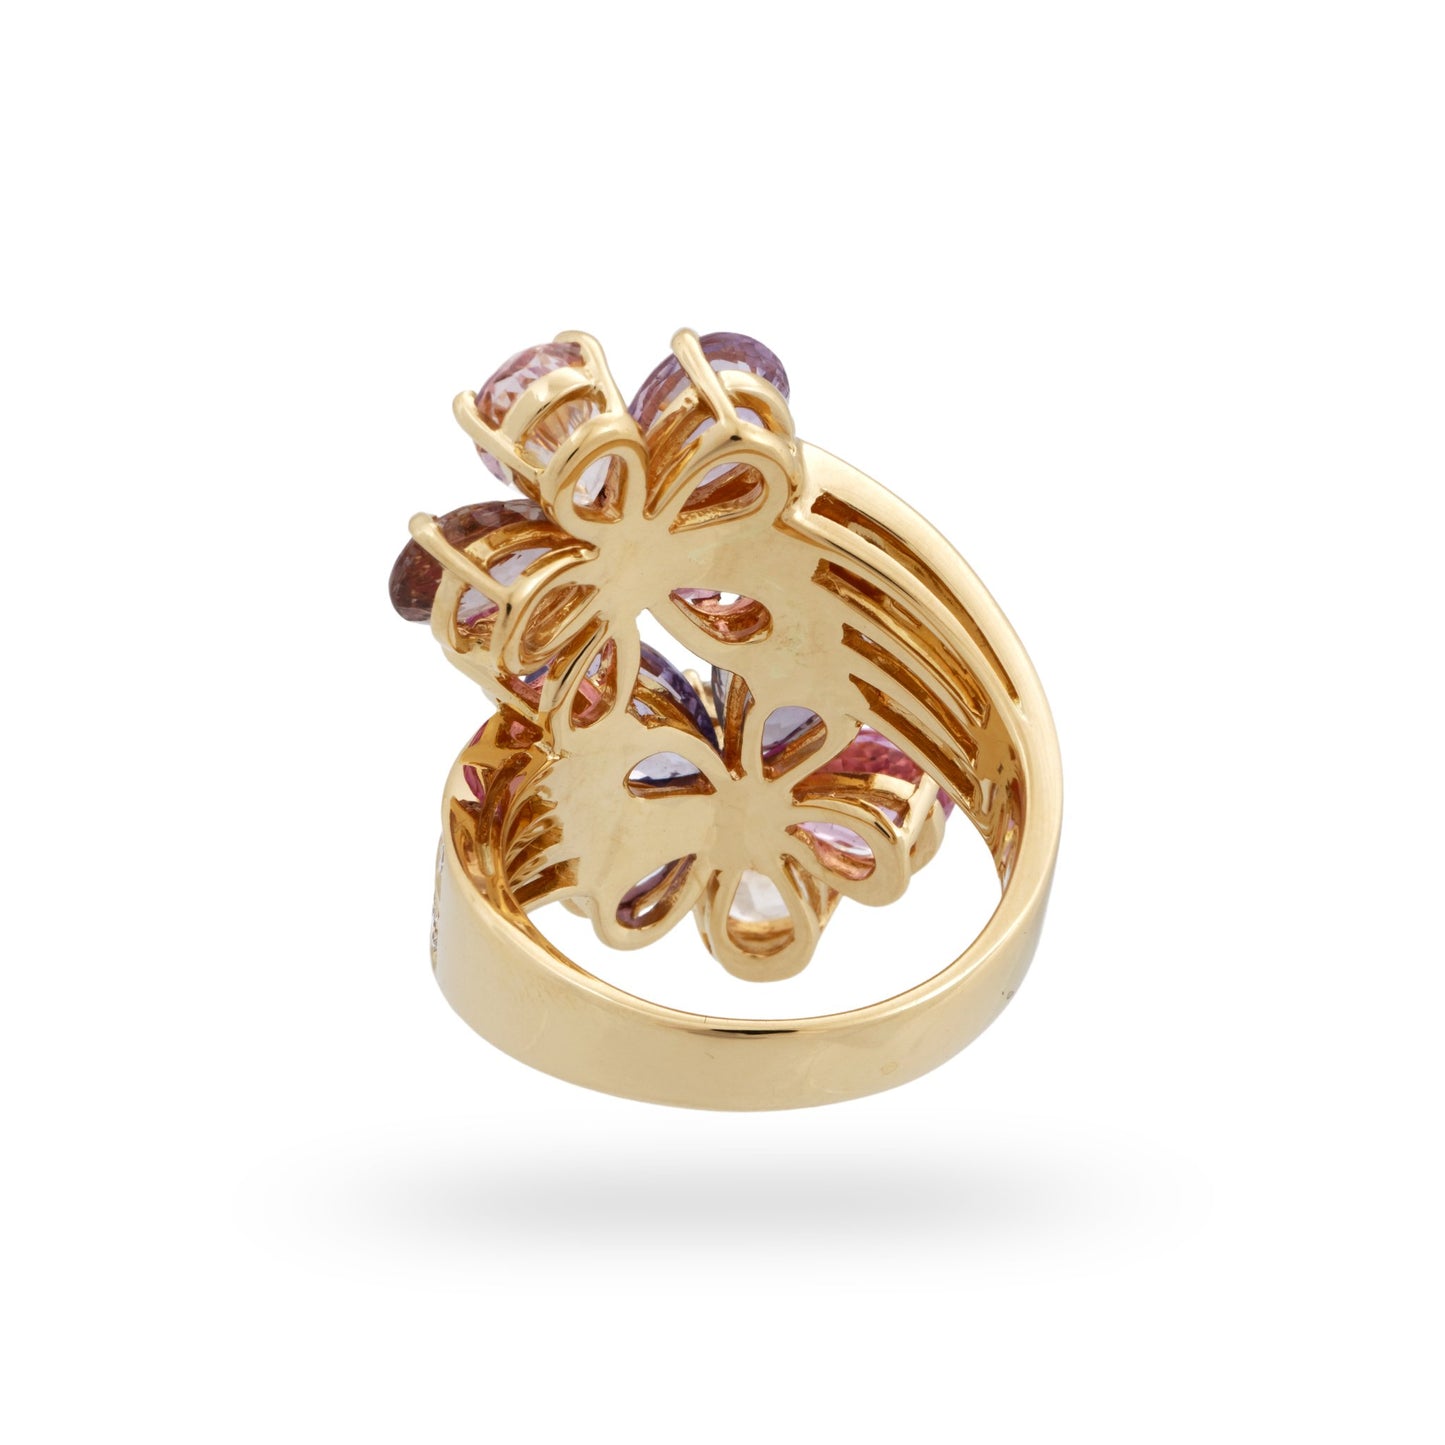 Bvlgari 18K Yellow Gold Sapphire and Diamond Flower Ring Size 5.5